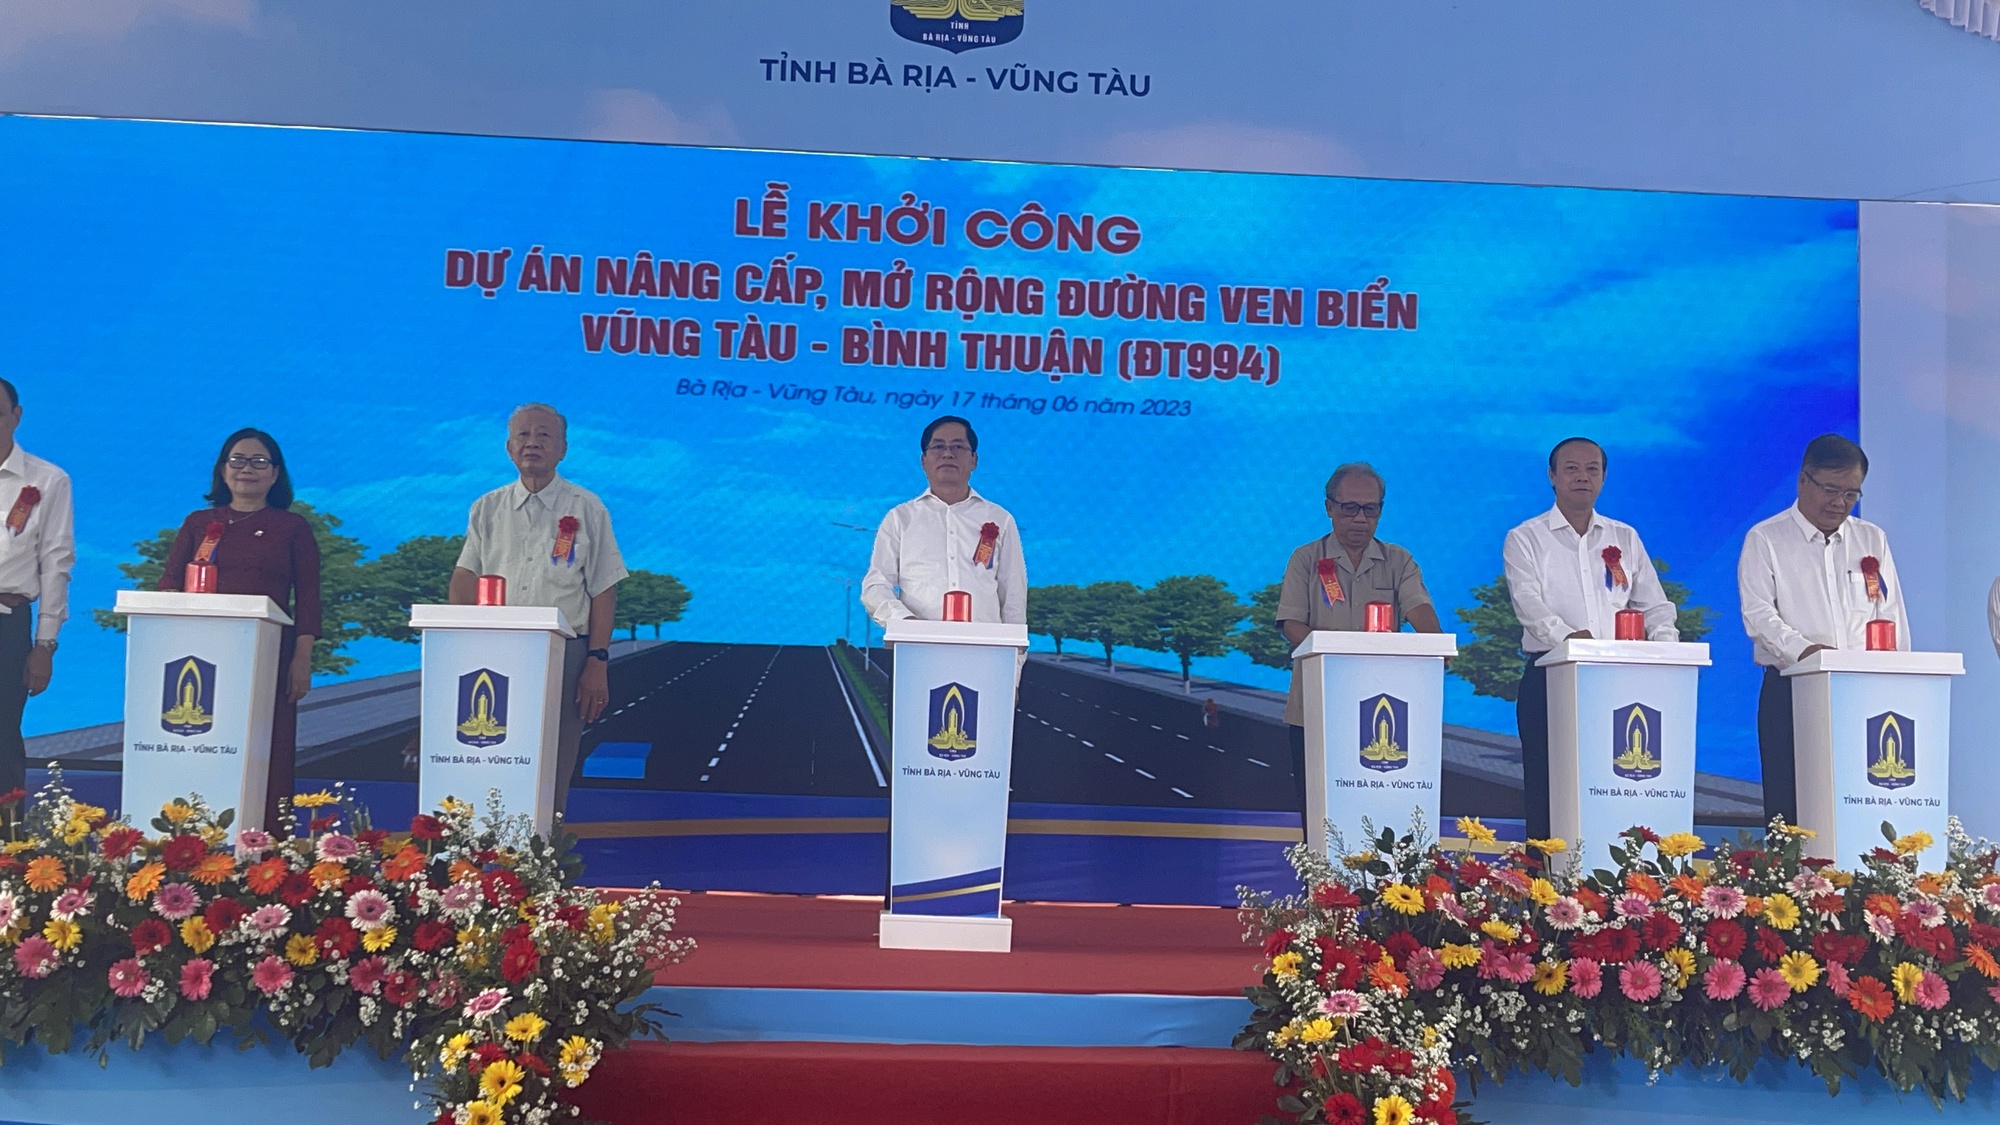 Mở rộng đường ven biển Vũng Tàu - Bình Thuận: Tạo cú hích lớn trong phát triển kinh tế, giúp kết nối liên vùng - Ảnh 2.